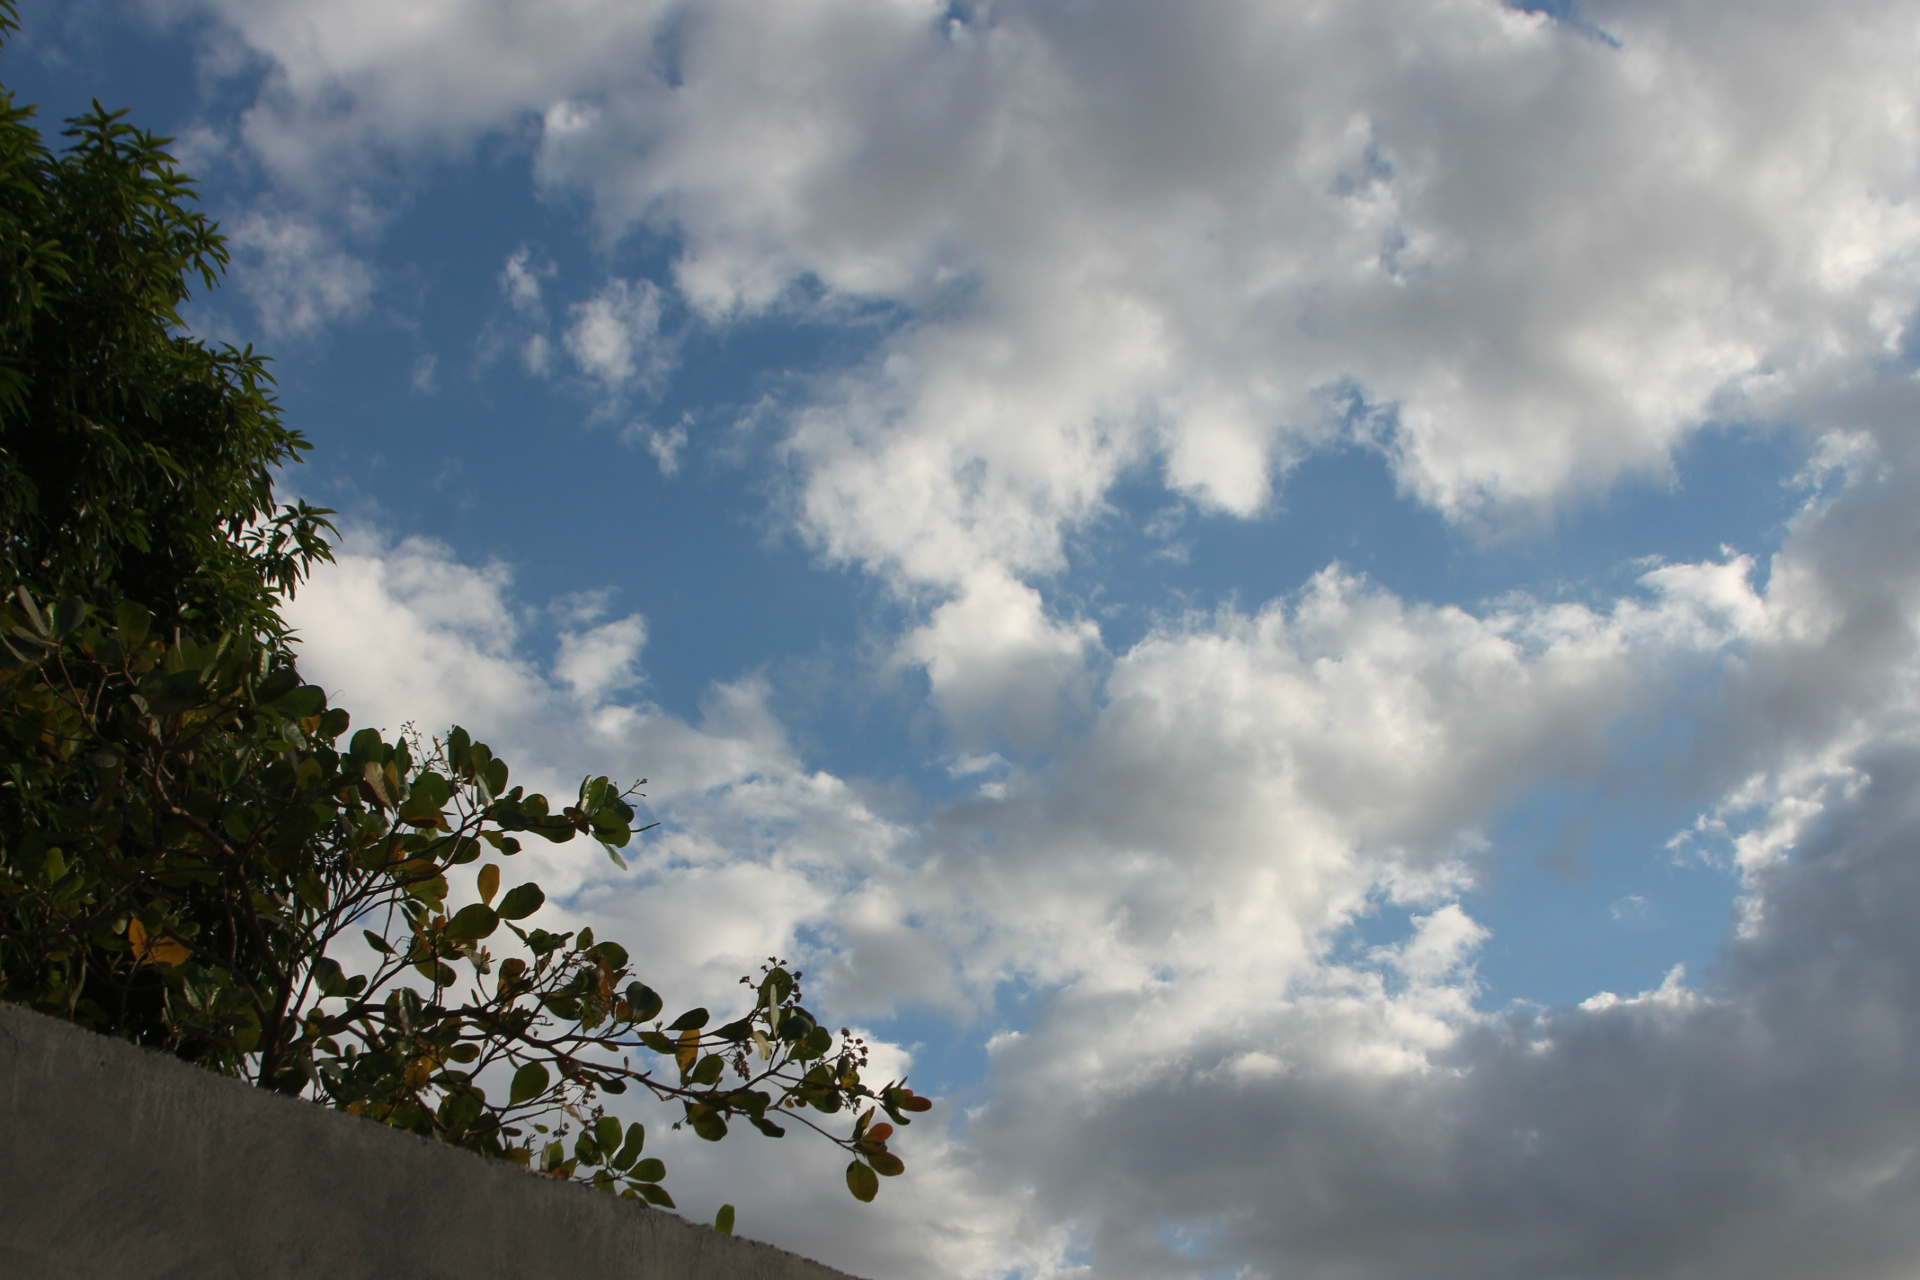 Previsão  de sol com algumas nuvens para esta terça-feira. (Foto: Kênia Guimarães)